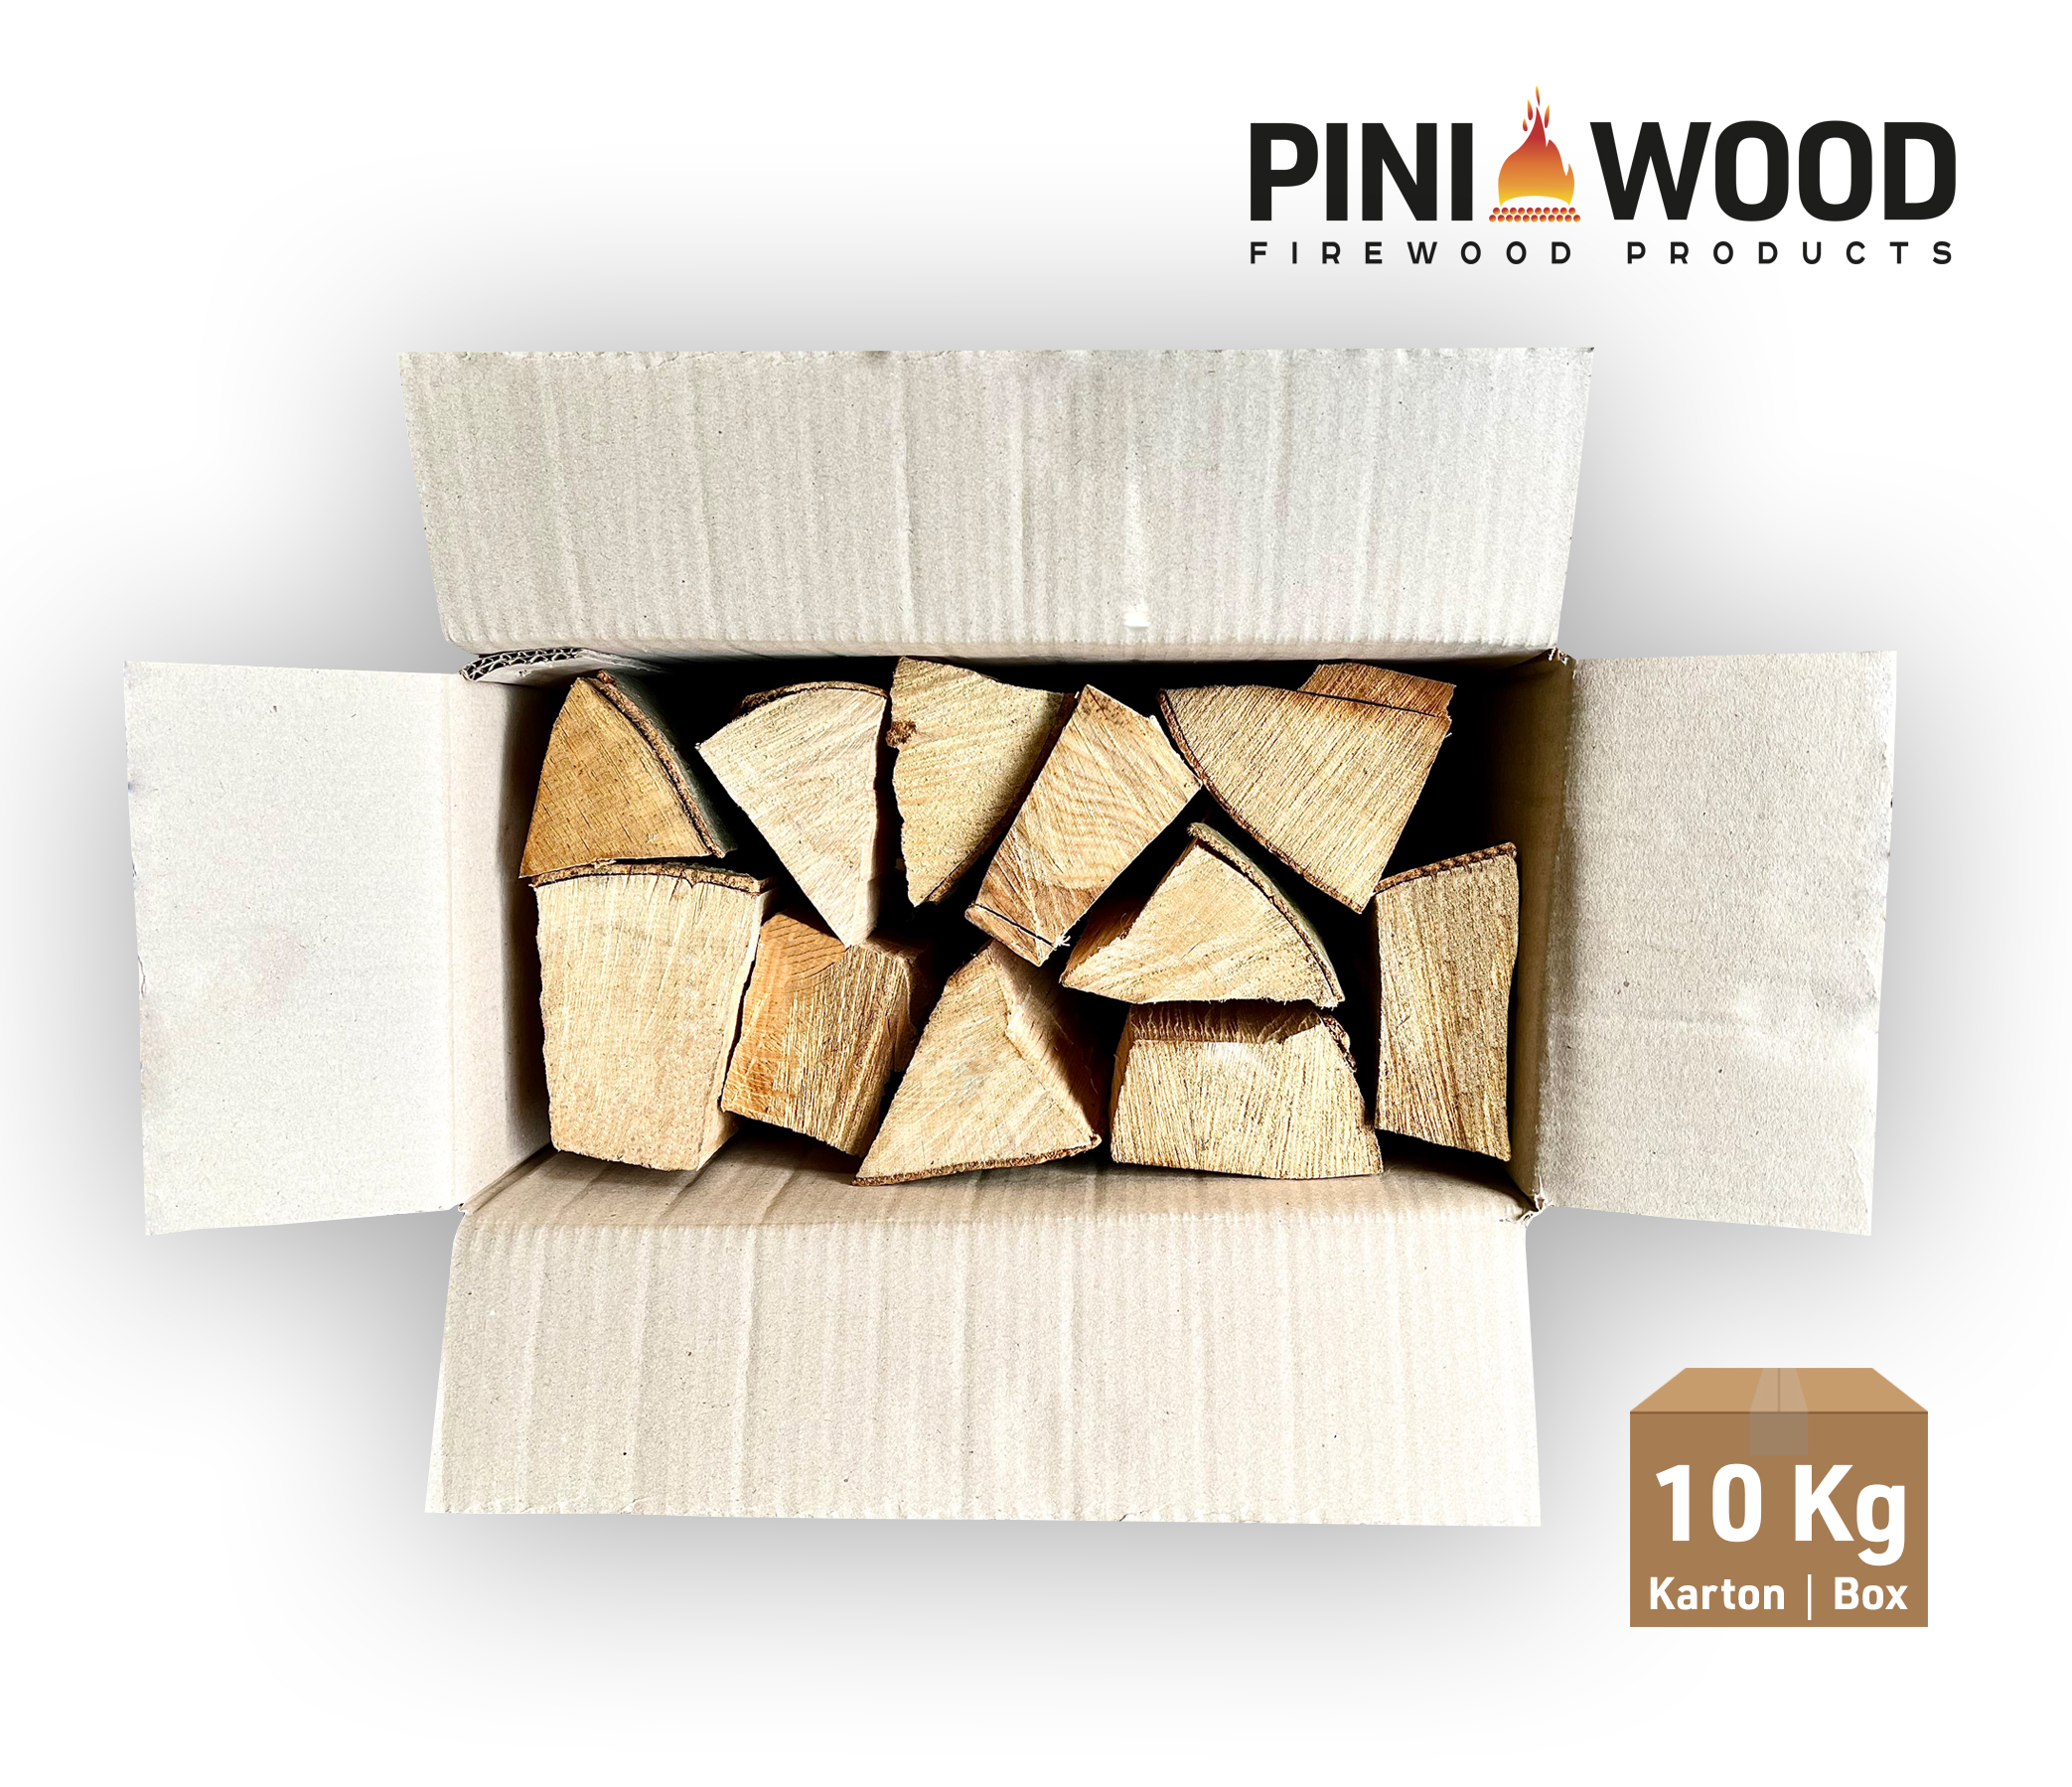 10 Kg de bois de chauffage bois de hêtre prêt à l'emploi, longueur de bûche environ 25 cm pour cheminée grill brasero four